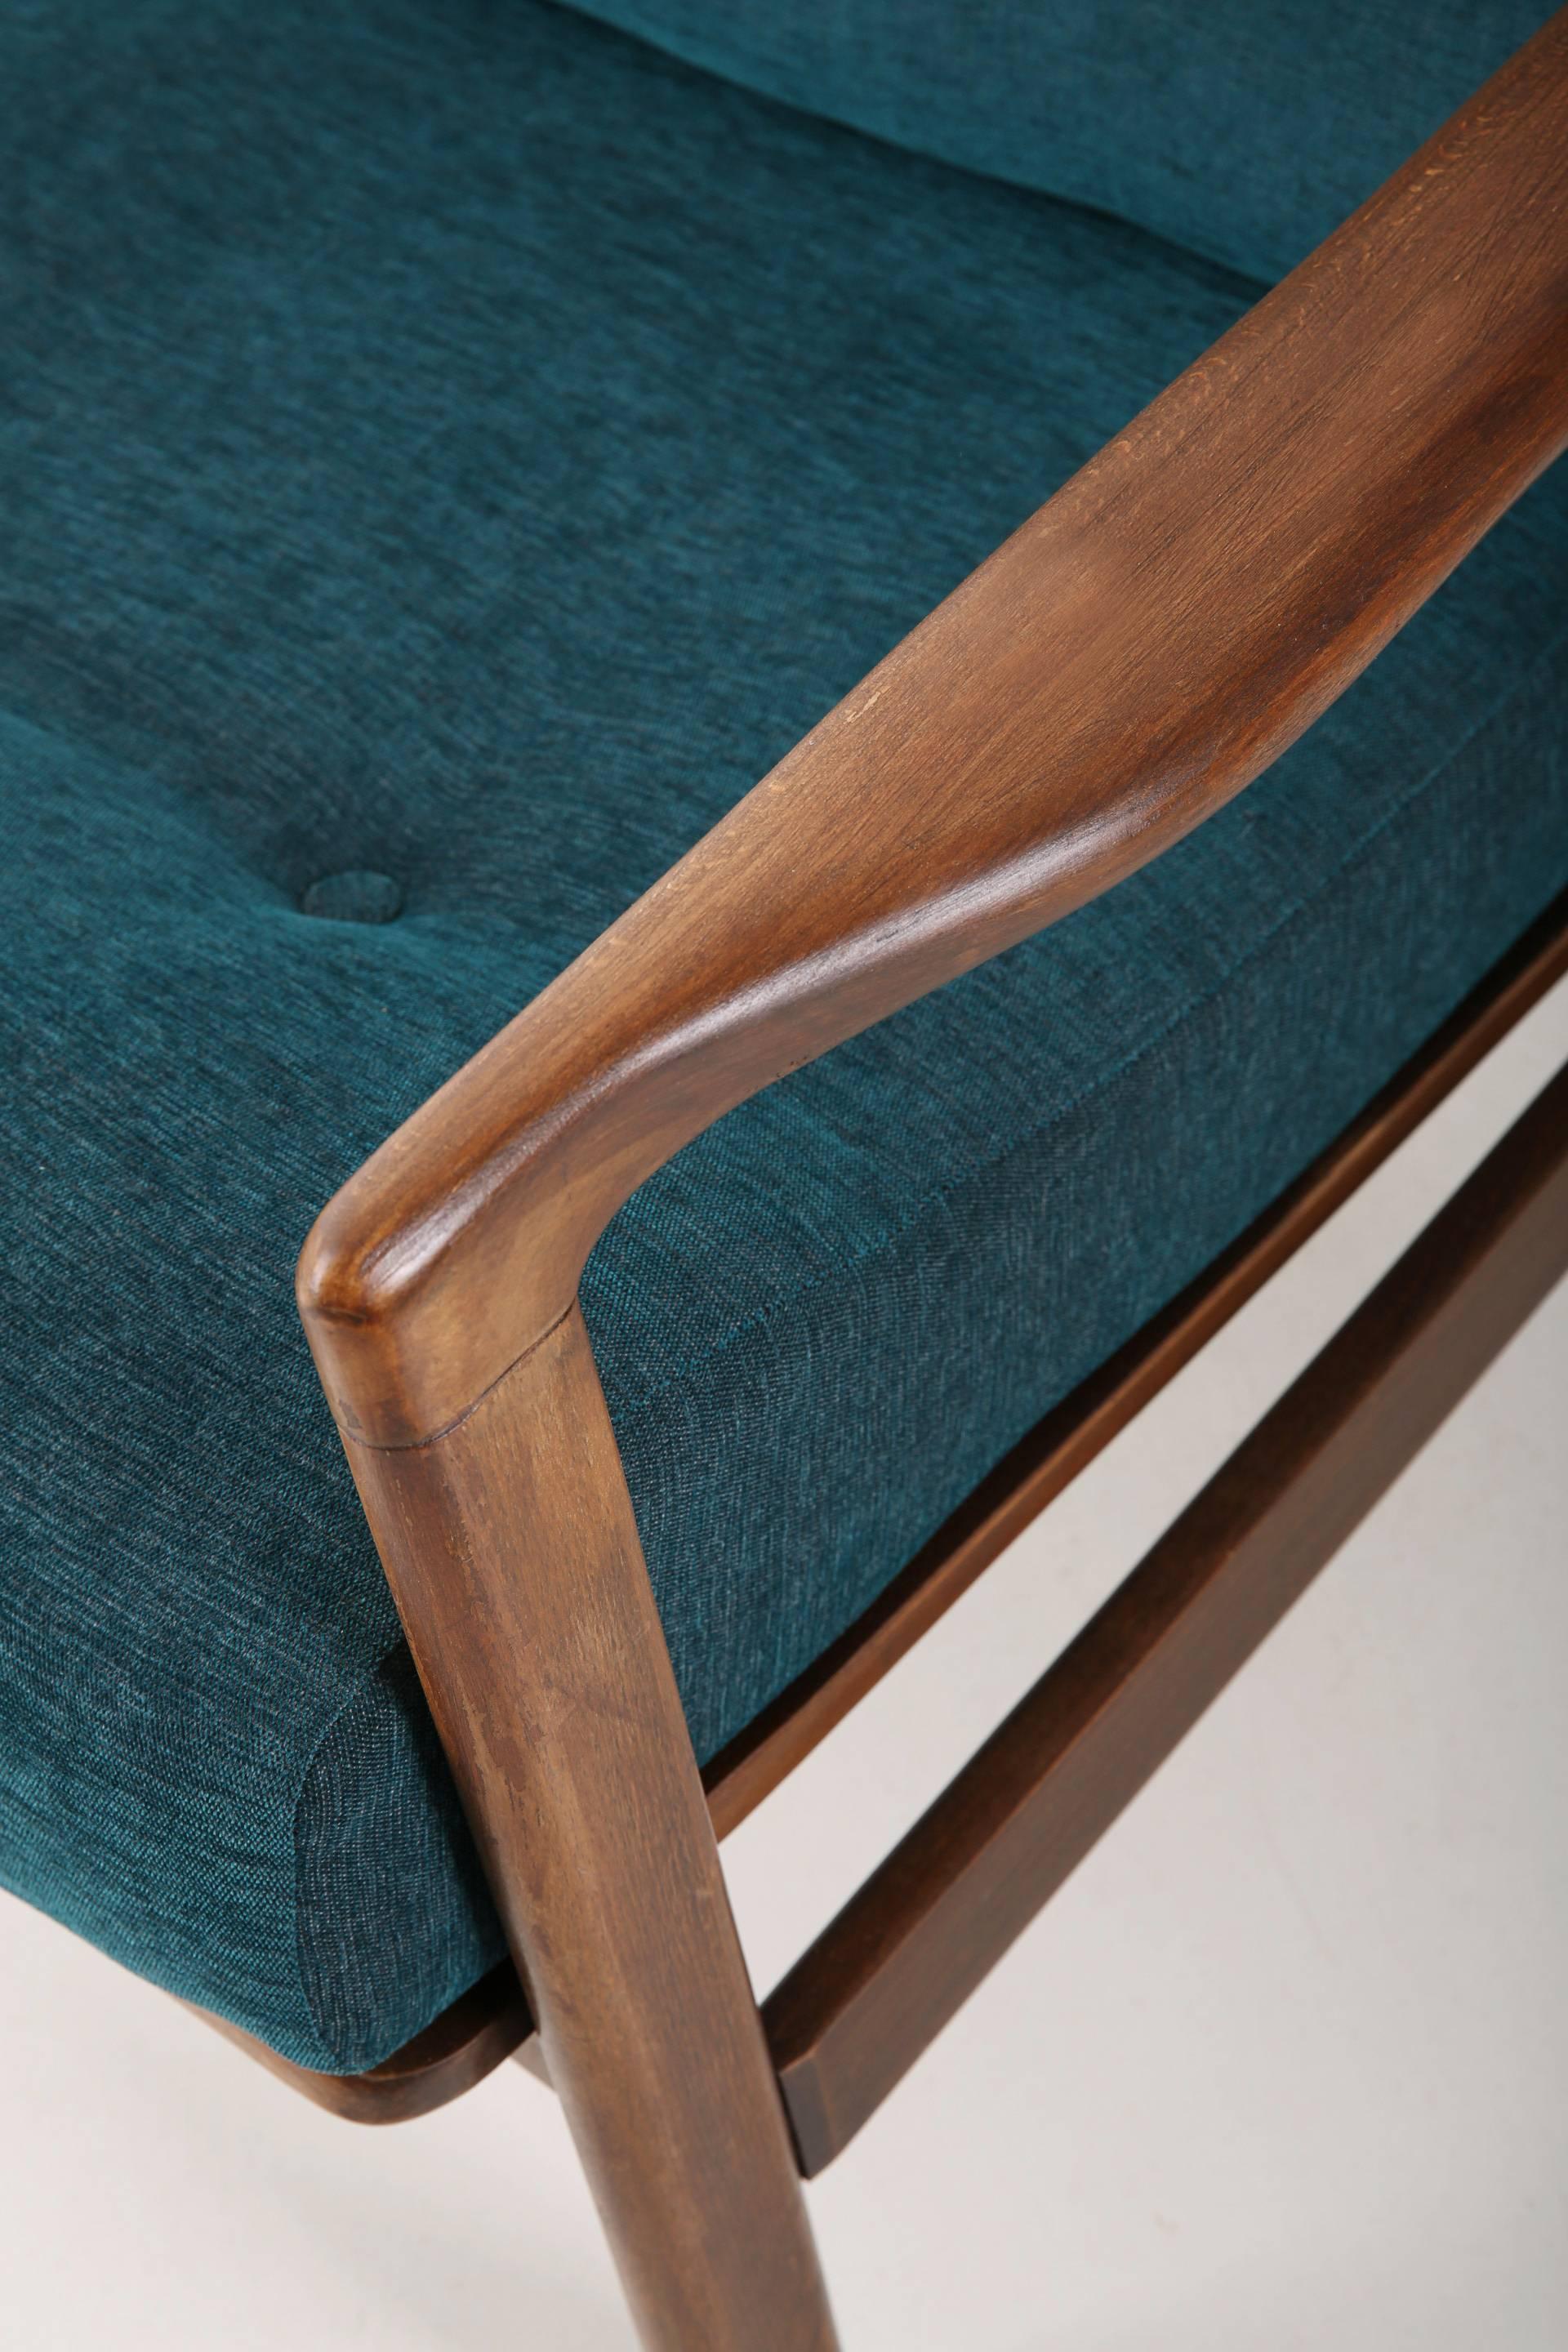 Der Sessel B-7522 wurde in den 1960er Jahren von Zenon Baczyk entworfen und von den Swarzedz-Möbelfabriken in Polen hergestellt. Möbel in perfektem Zustand, nach kompletter Renovierung der Polstermöbel und Auffrischung der Holzarbeiten. Stabiler und